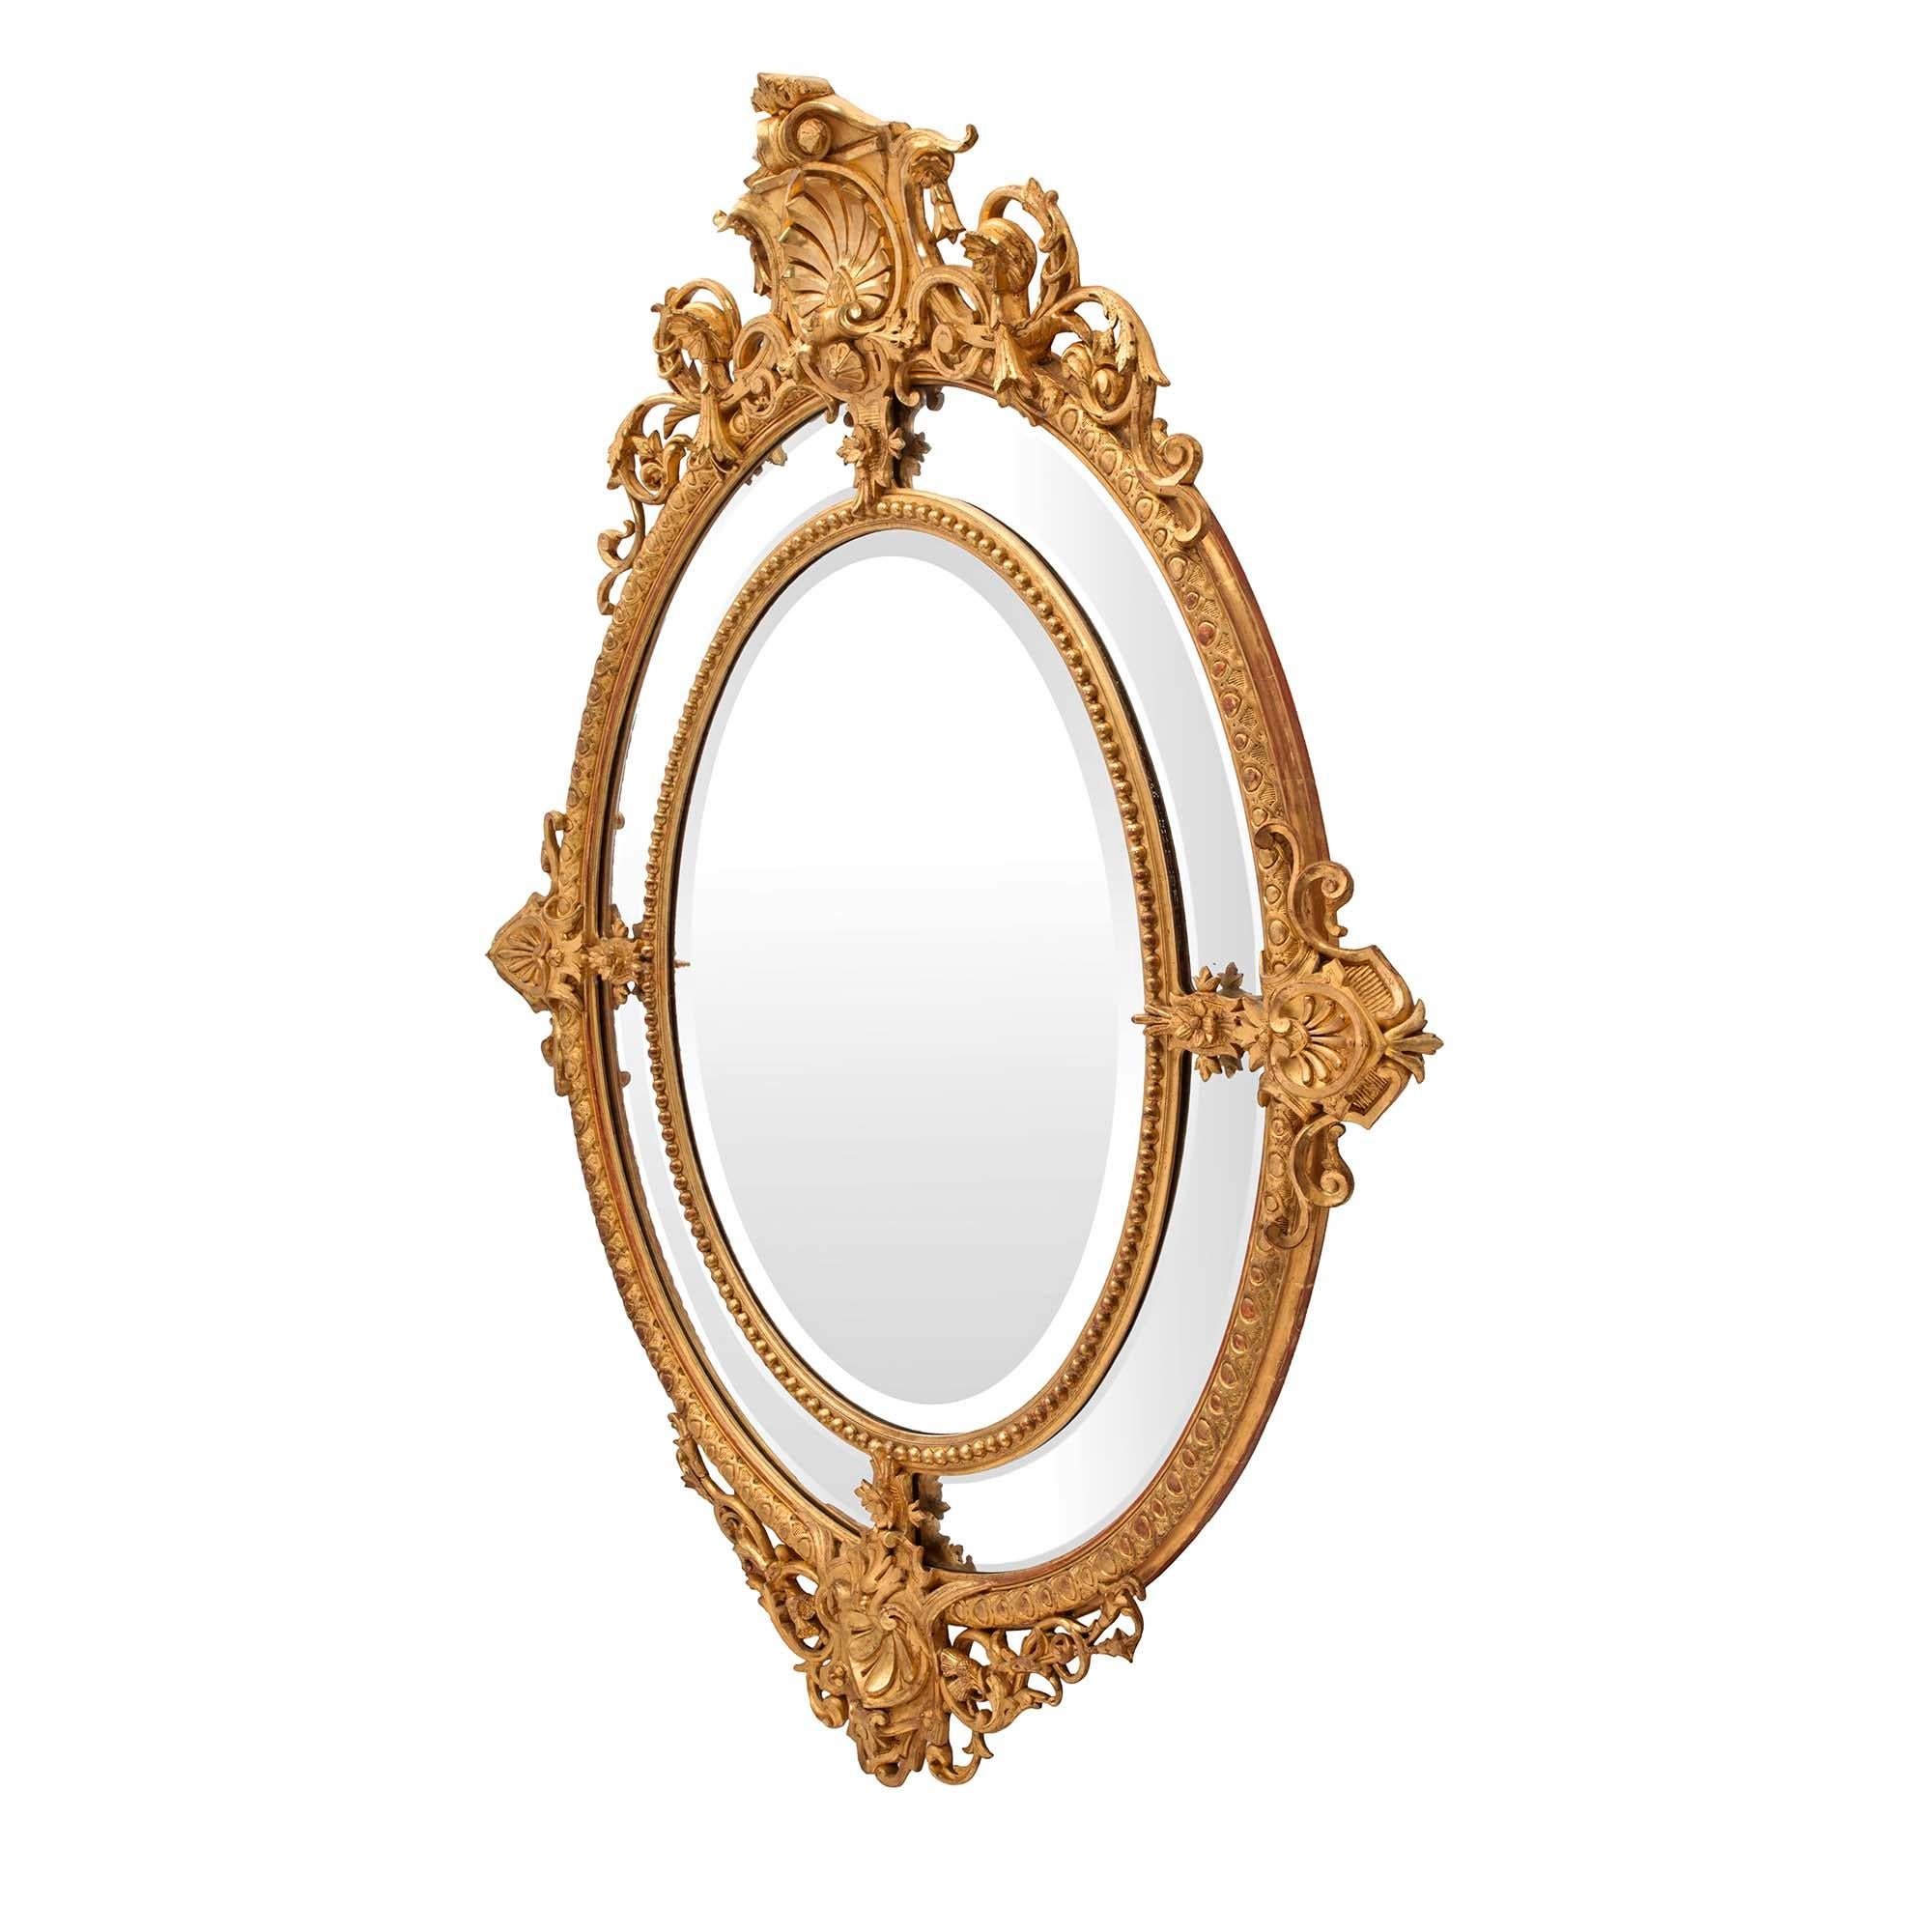 Eine schöne Französisch 19. Jahrhundert Louis XVI st. oval doppelt gerahmt Vergoldung Spiegel. Die originale, abgeschrägte Spiegelplatte ist von einer feinen Perlenbordüre eingerahmt. Die vier bogenförmigen, ursprünglich abgeschrägten Spiegelplatten